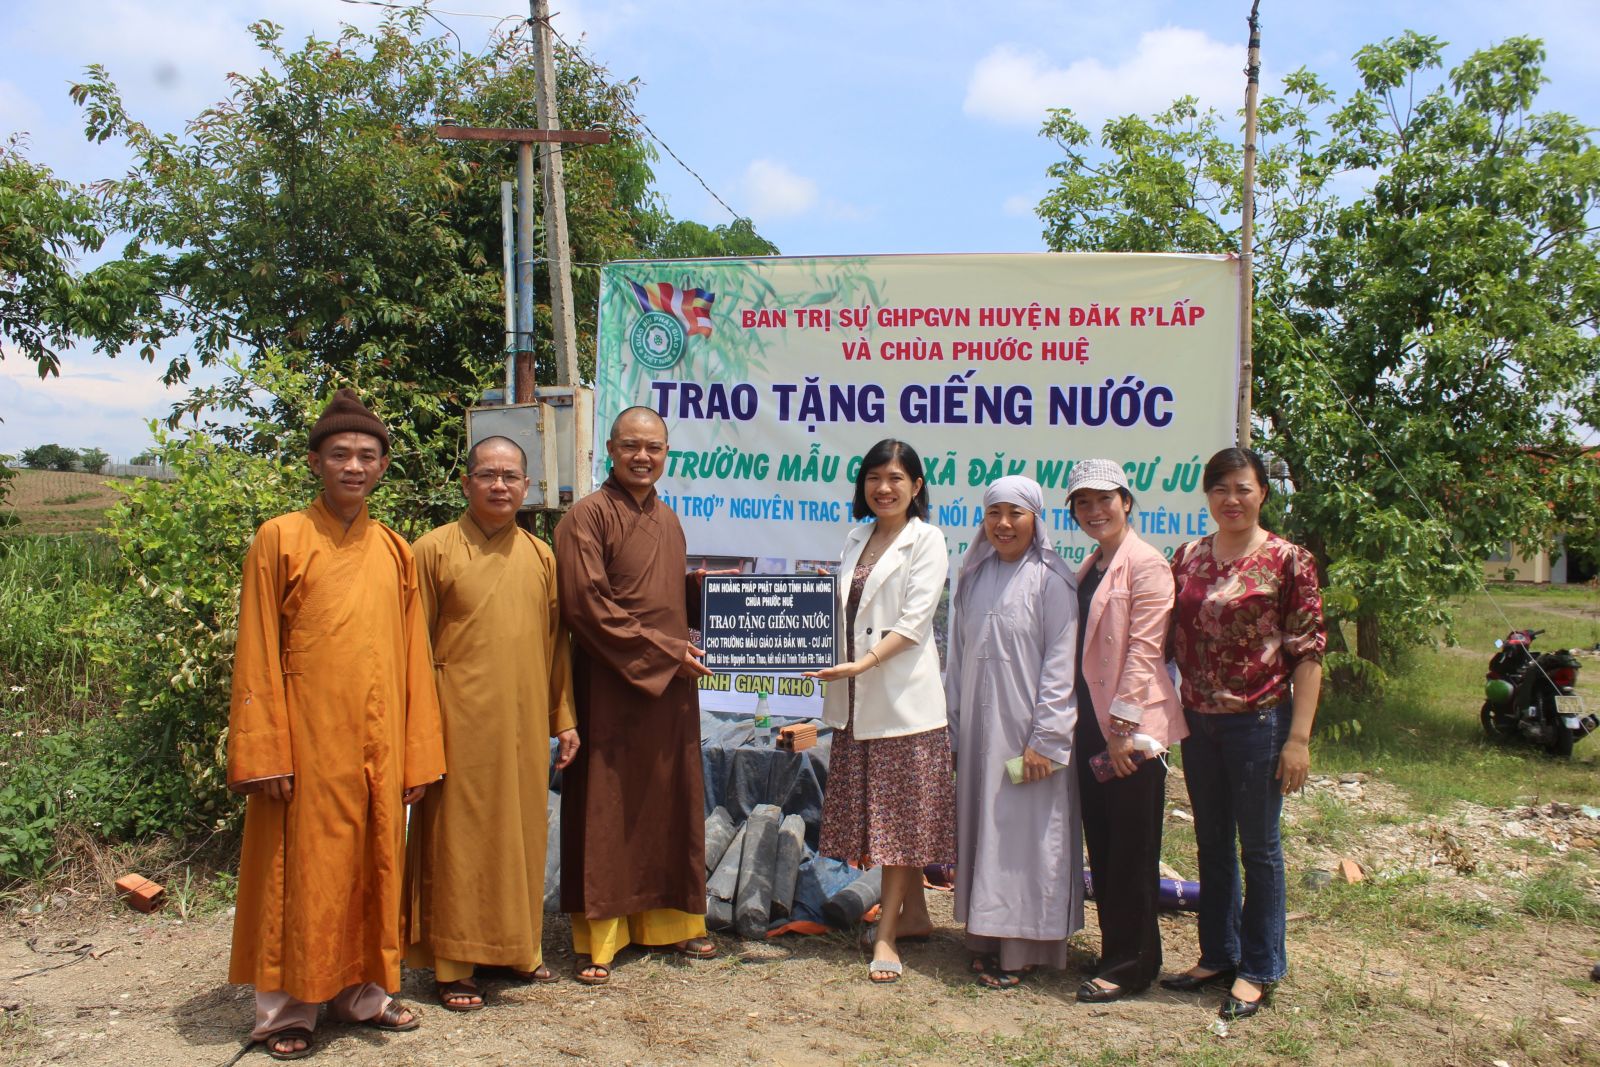 Ban Trị Sự GHPGVN Huyện Đăk R'Lấp, cùng chùa Phước Huệ trao tặng giếng nước.